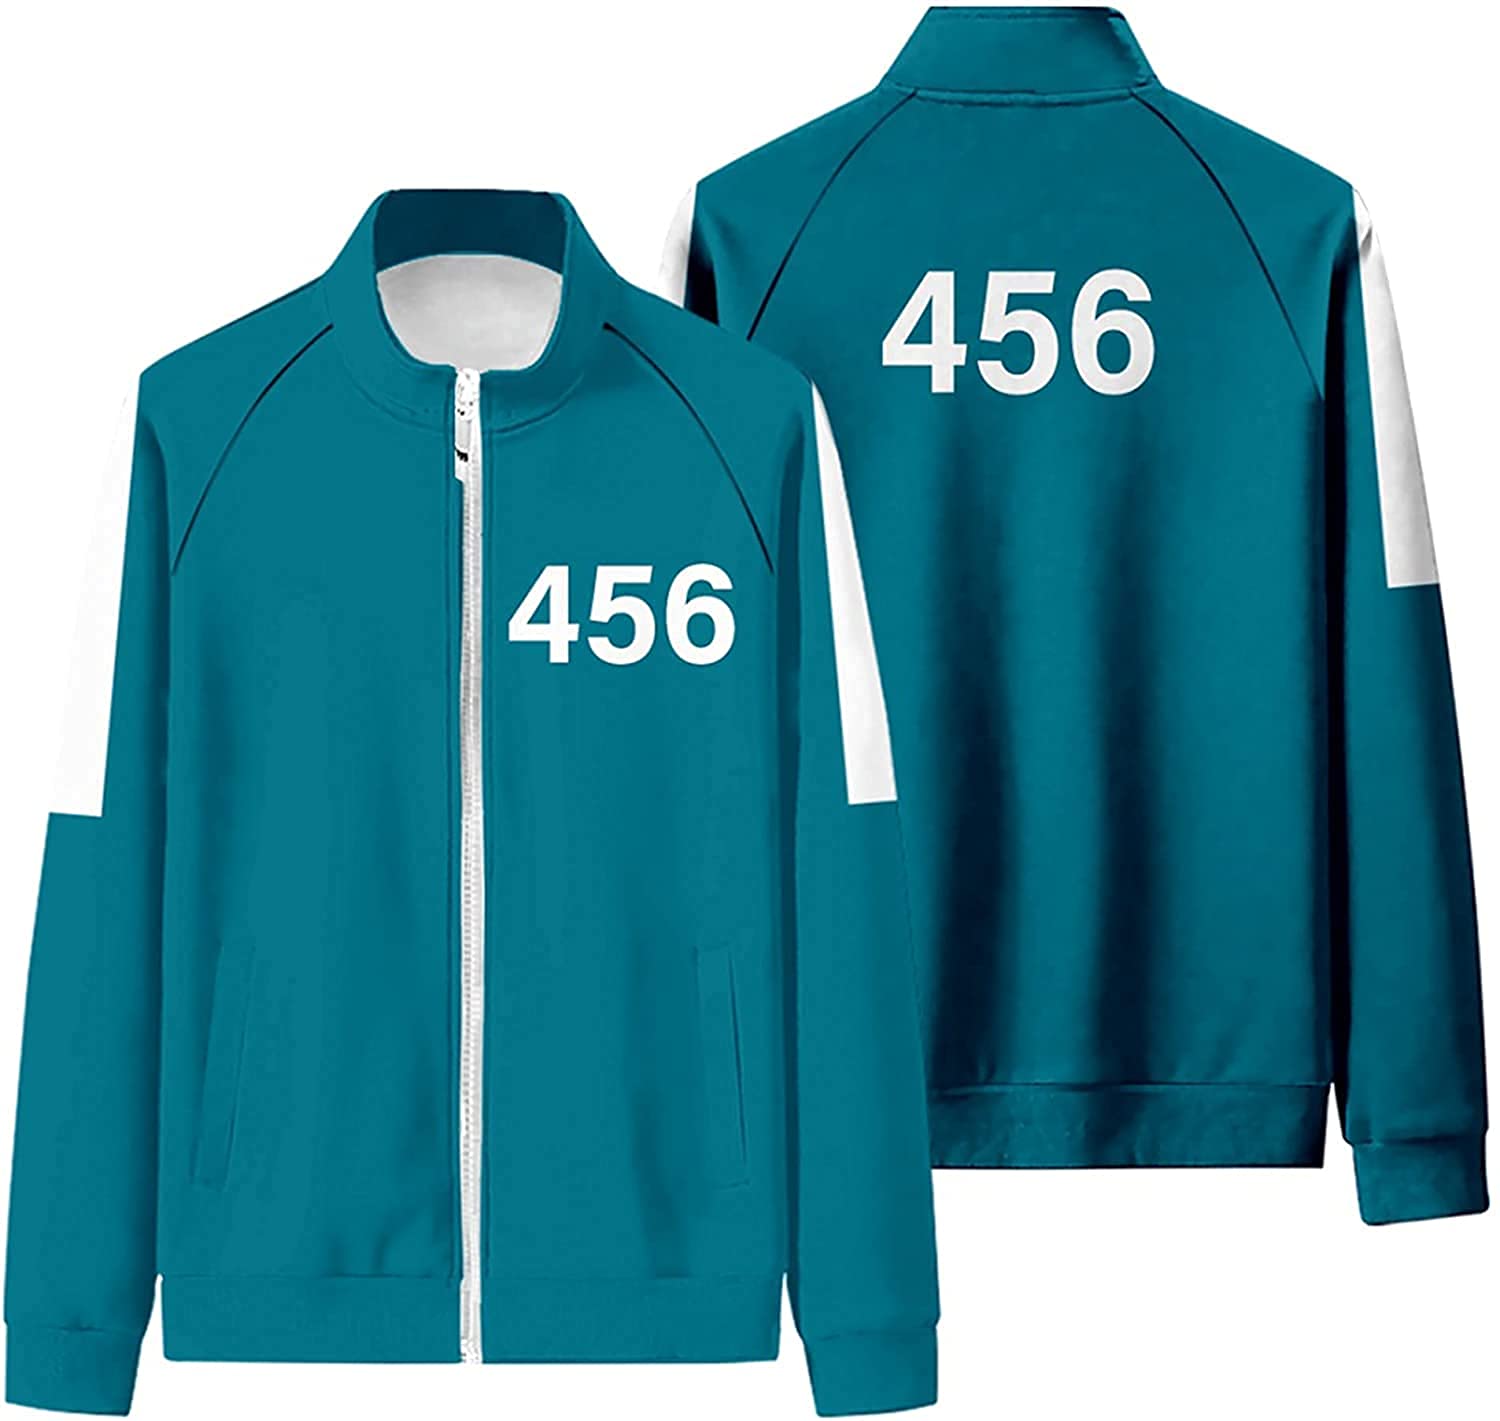 绿色男生运动服上衣 456号-9Rabbit北美情趣用品